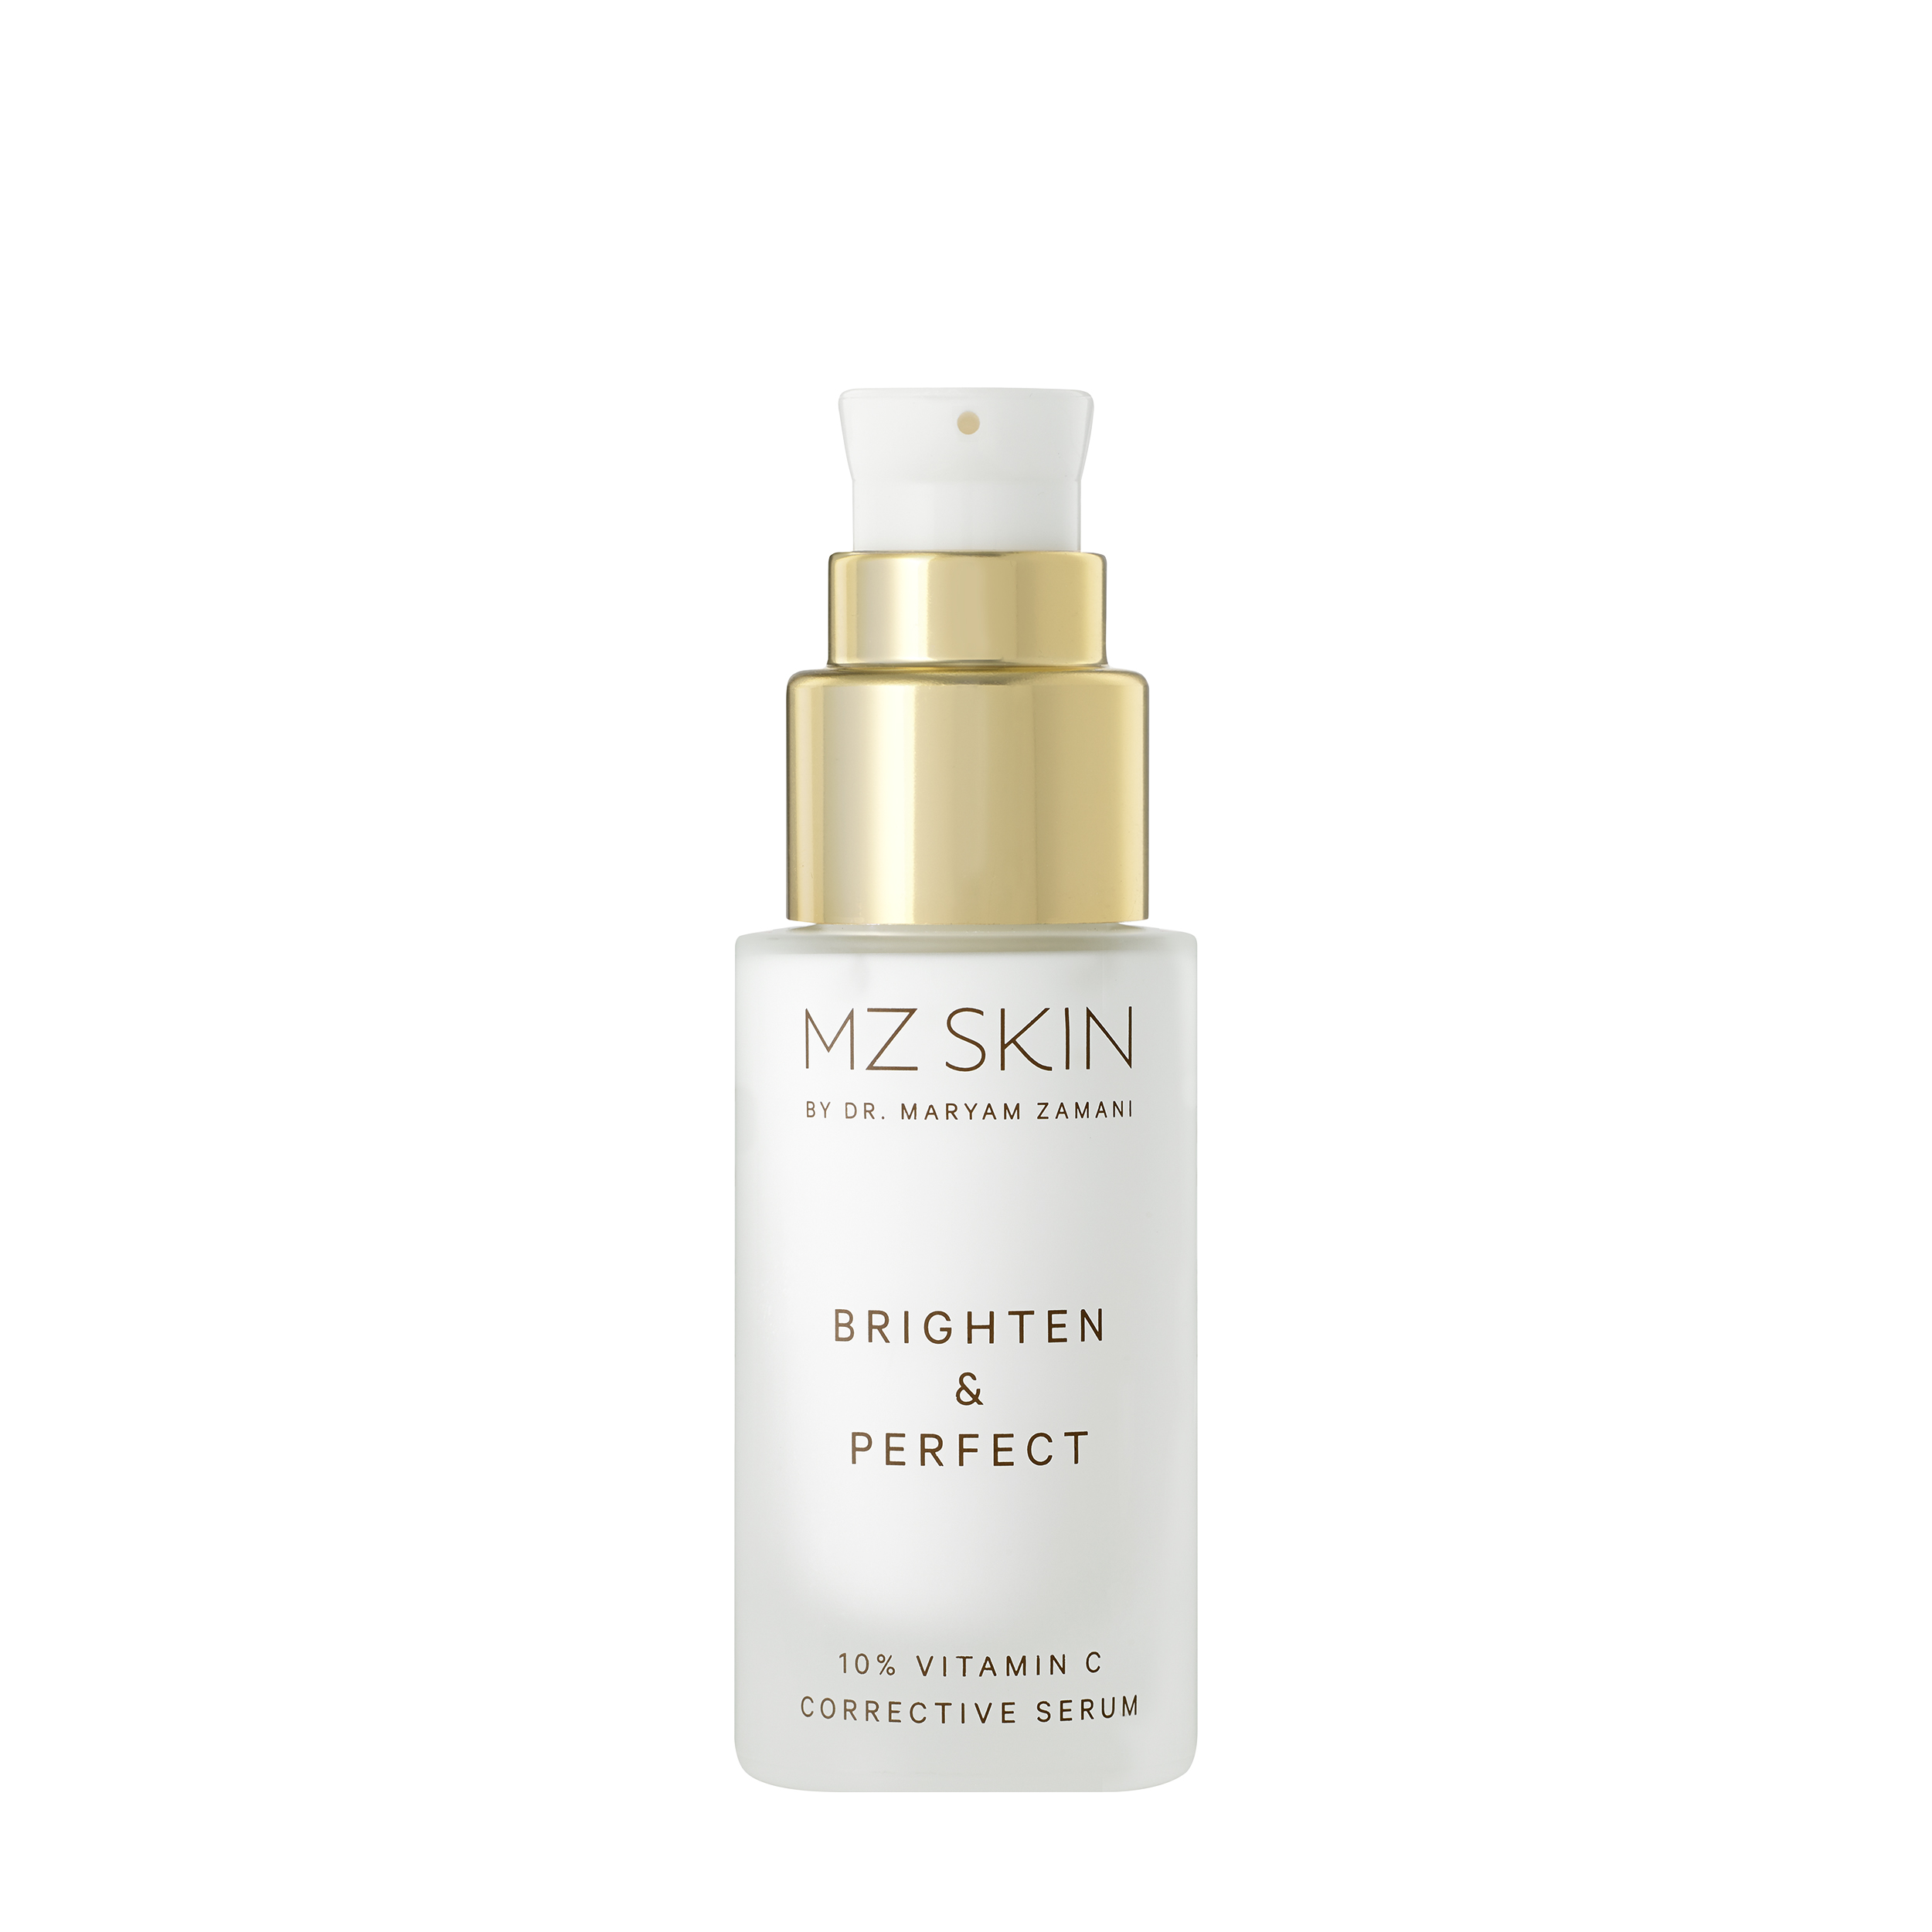 MZ Skin Сыворотка Brighten & Perfect против пигментных пятен с 10% витамином C